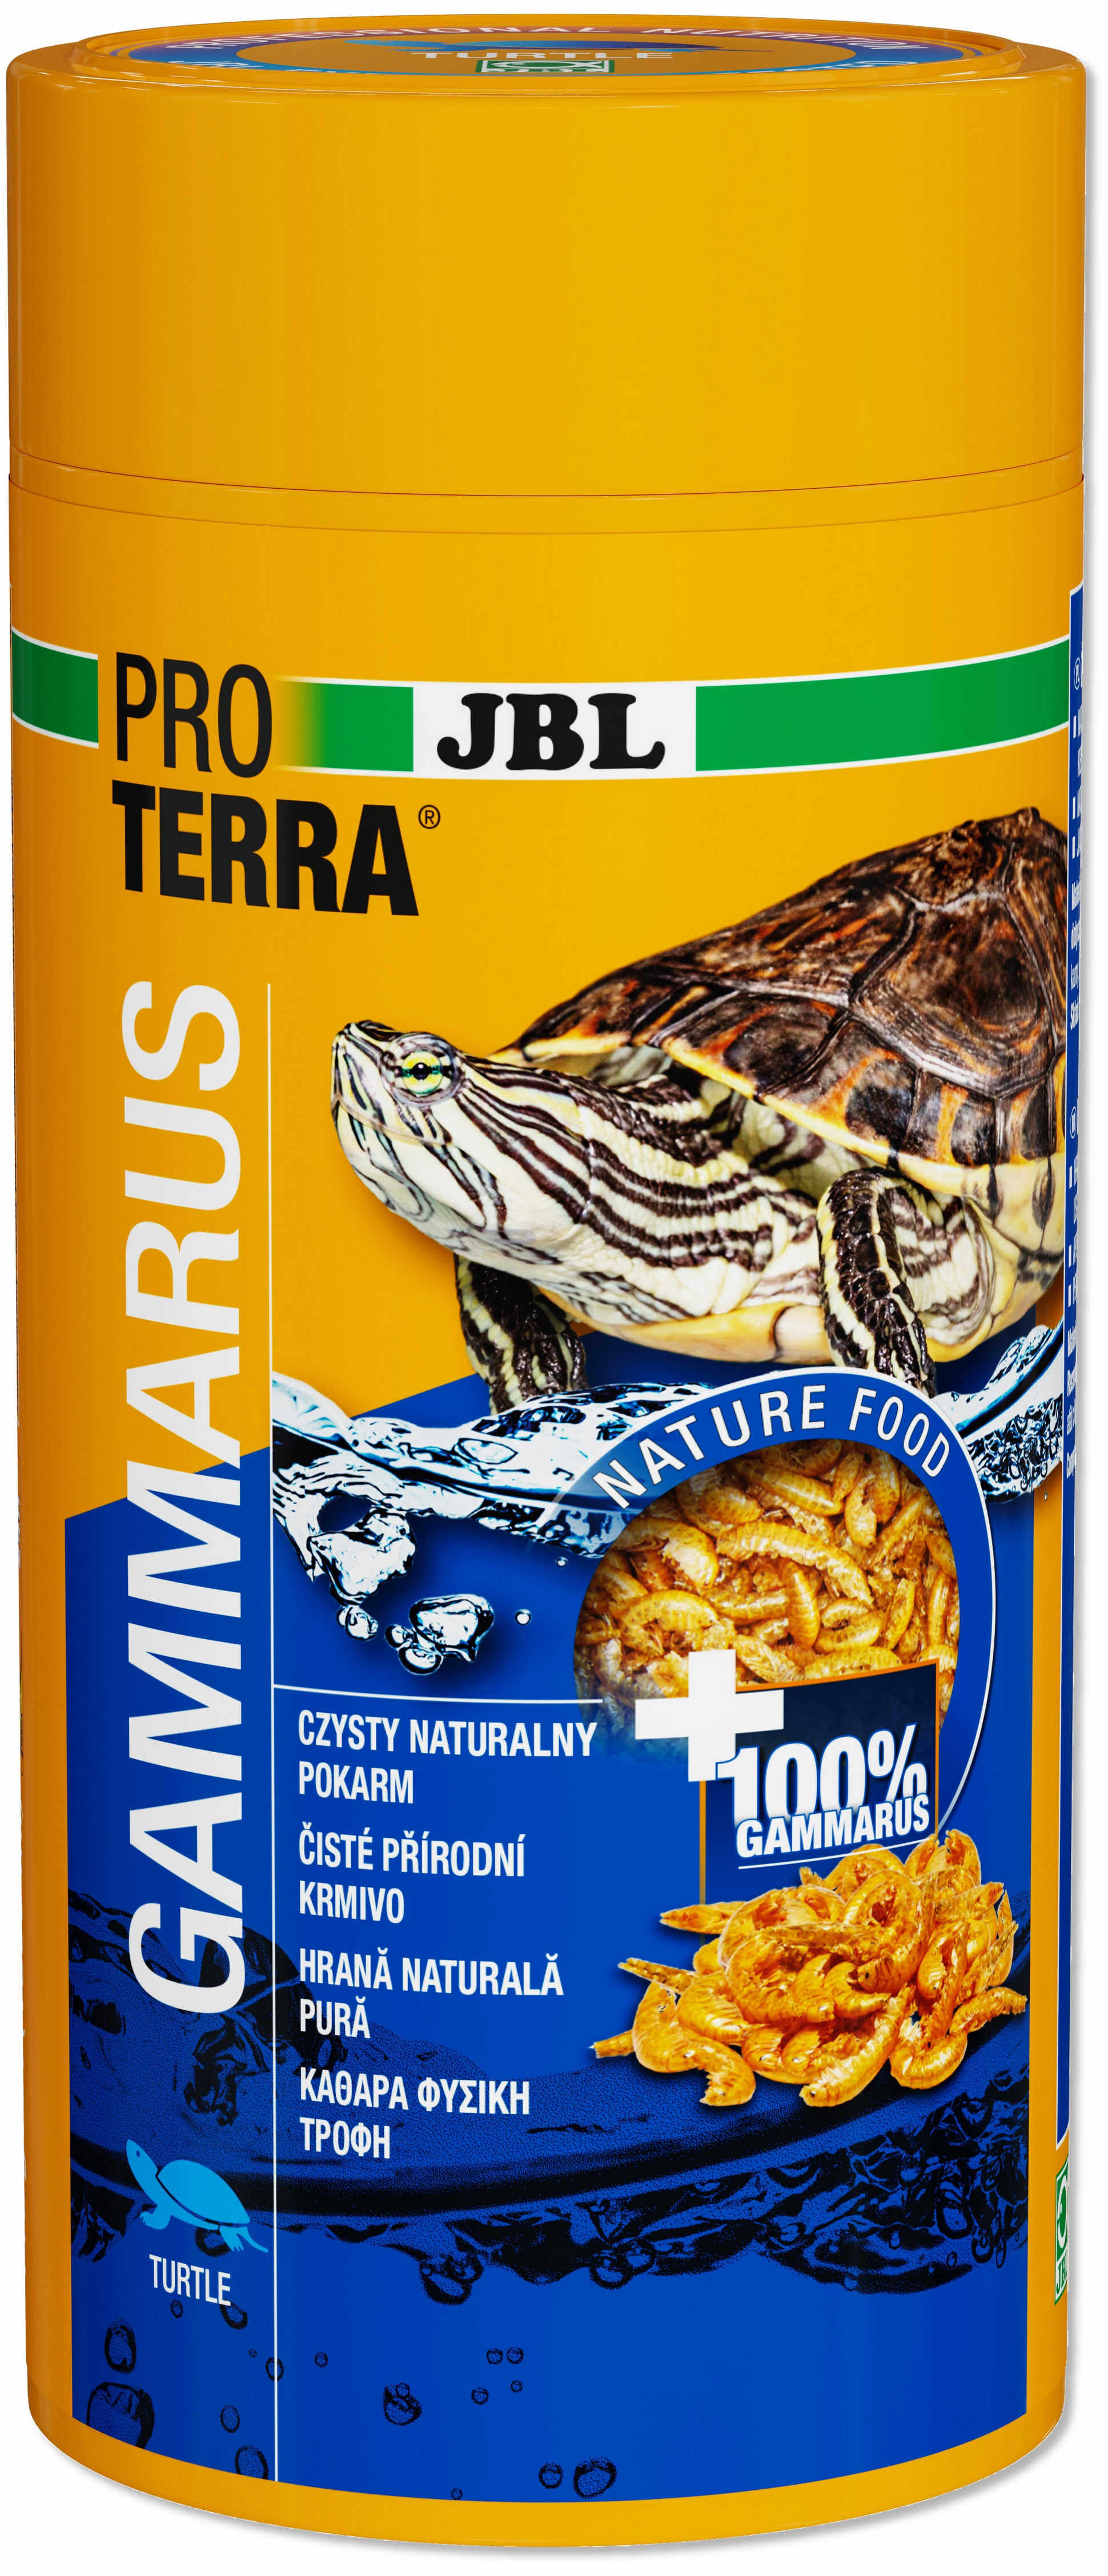 JBL Proterra Gammarus - Hrană pentru broaşte ţestoase 1L